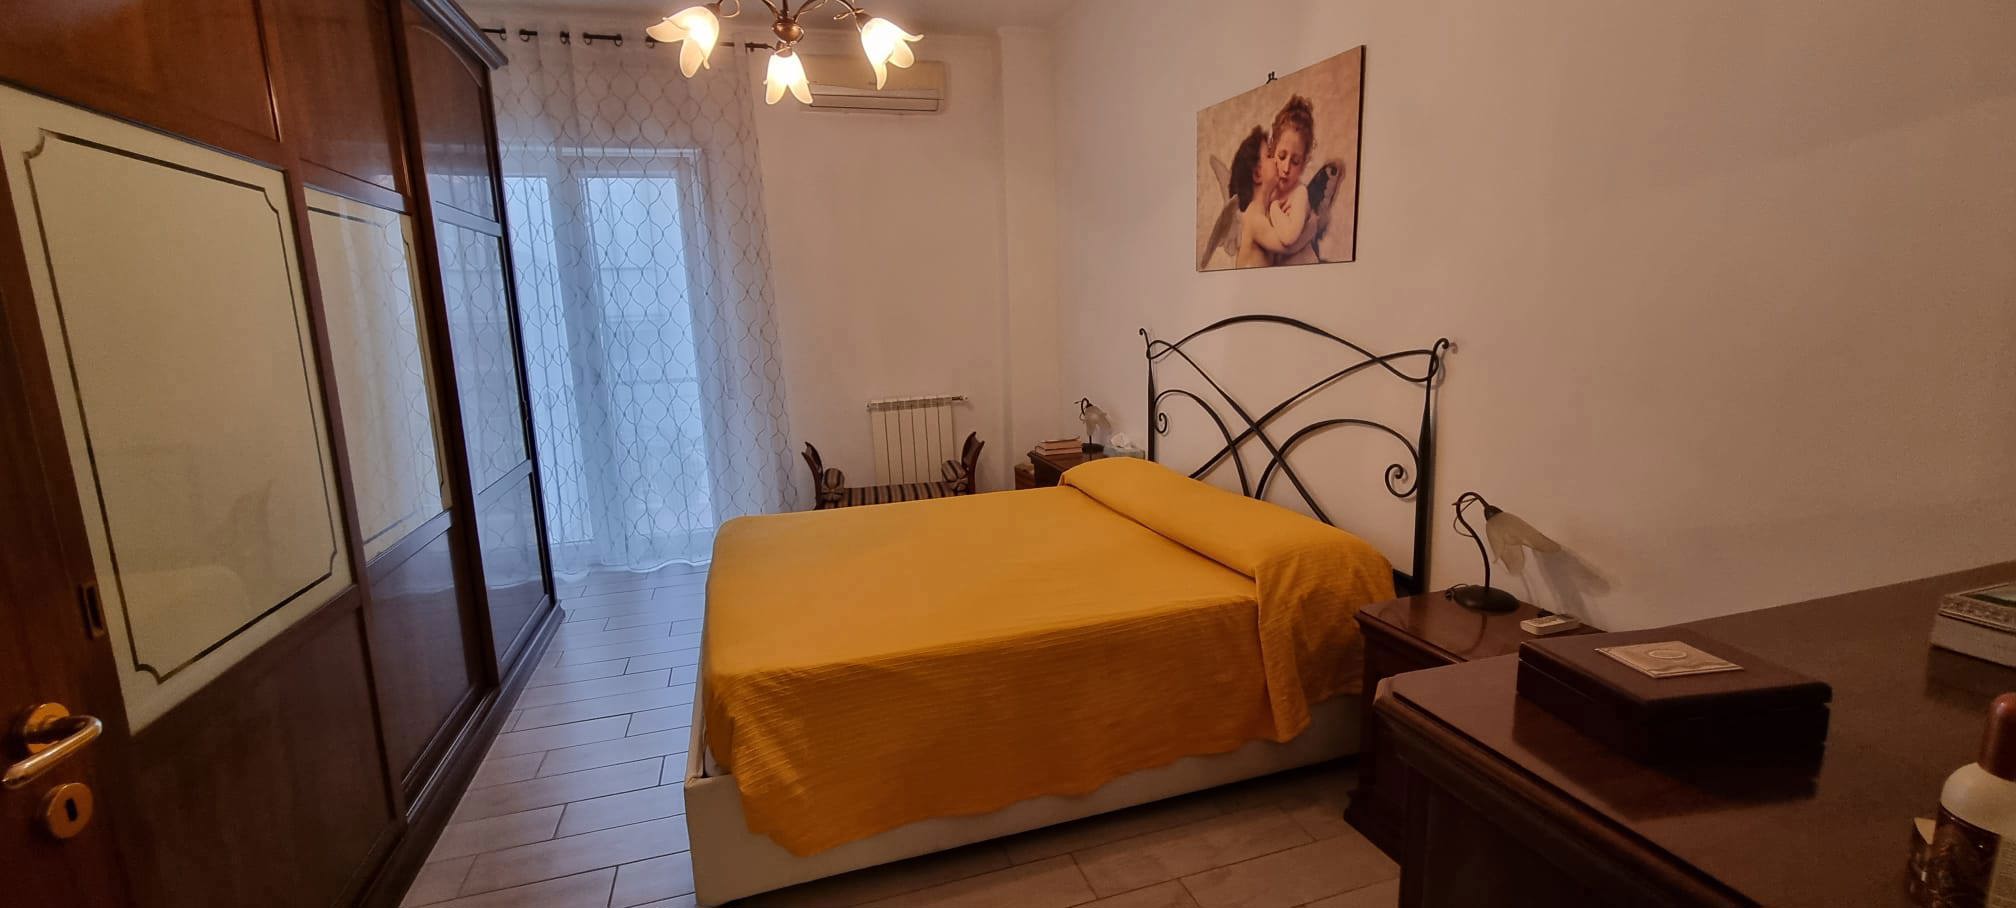 Appartamento di 75 mq in vendita - Napoli